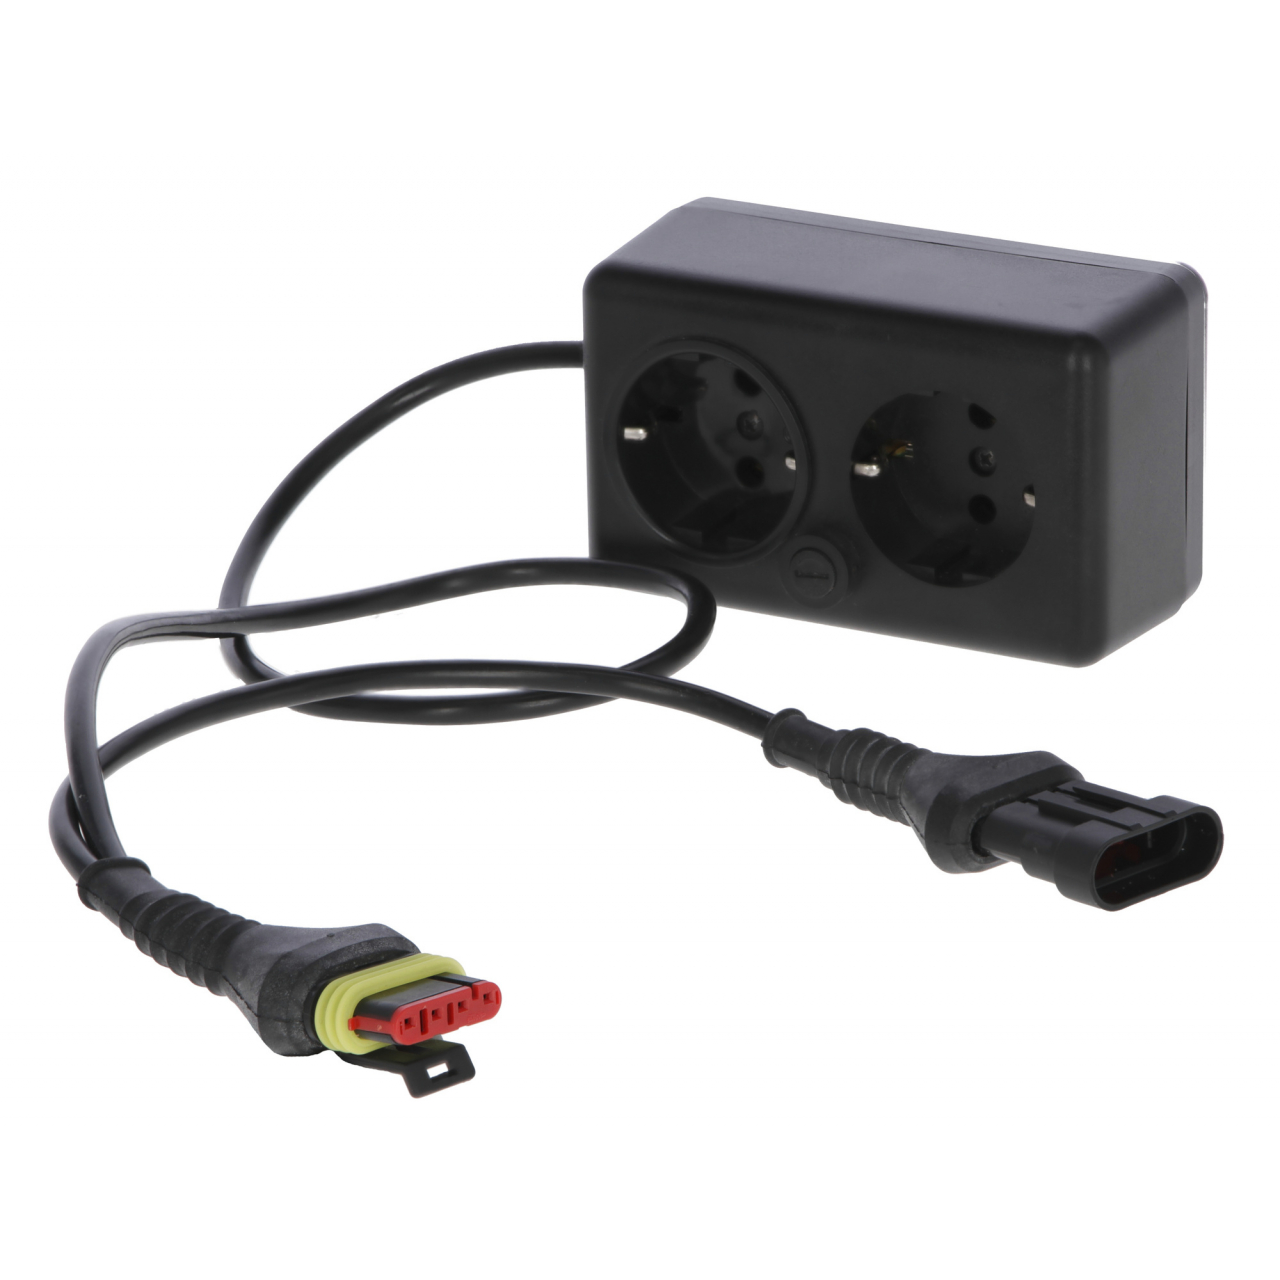 Adapter 230 Voltos készülék esetén FenceCONTROL rendszerhez (mobil felügyelet és vezérlés villanypásztor rendszerekhez)